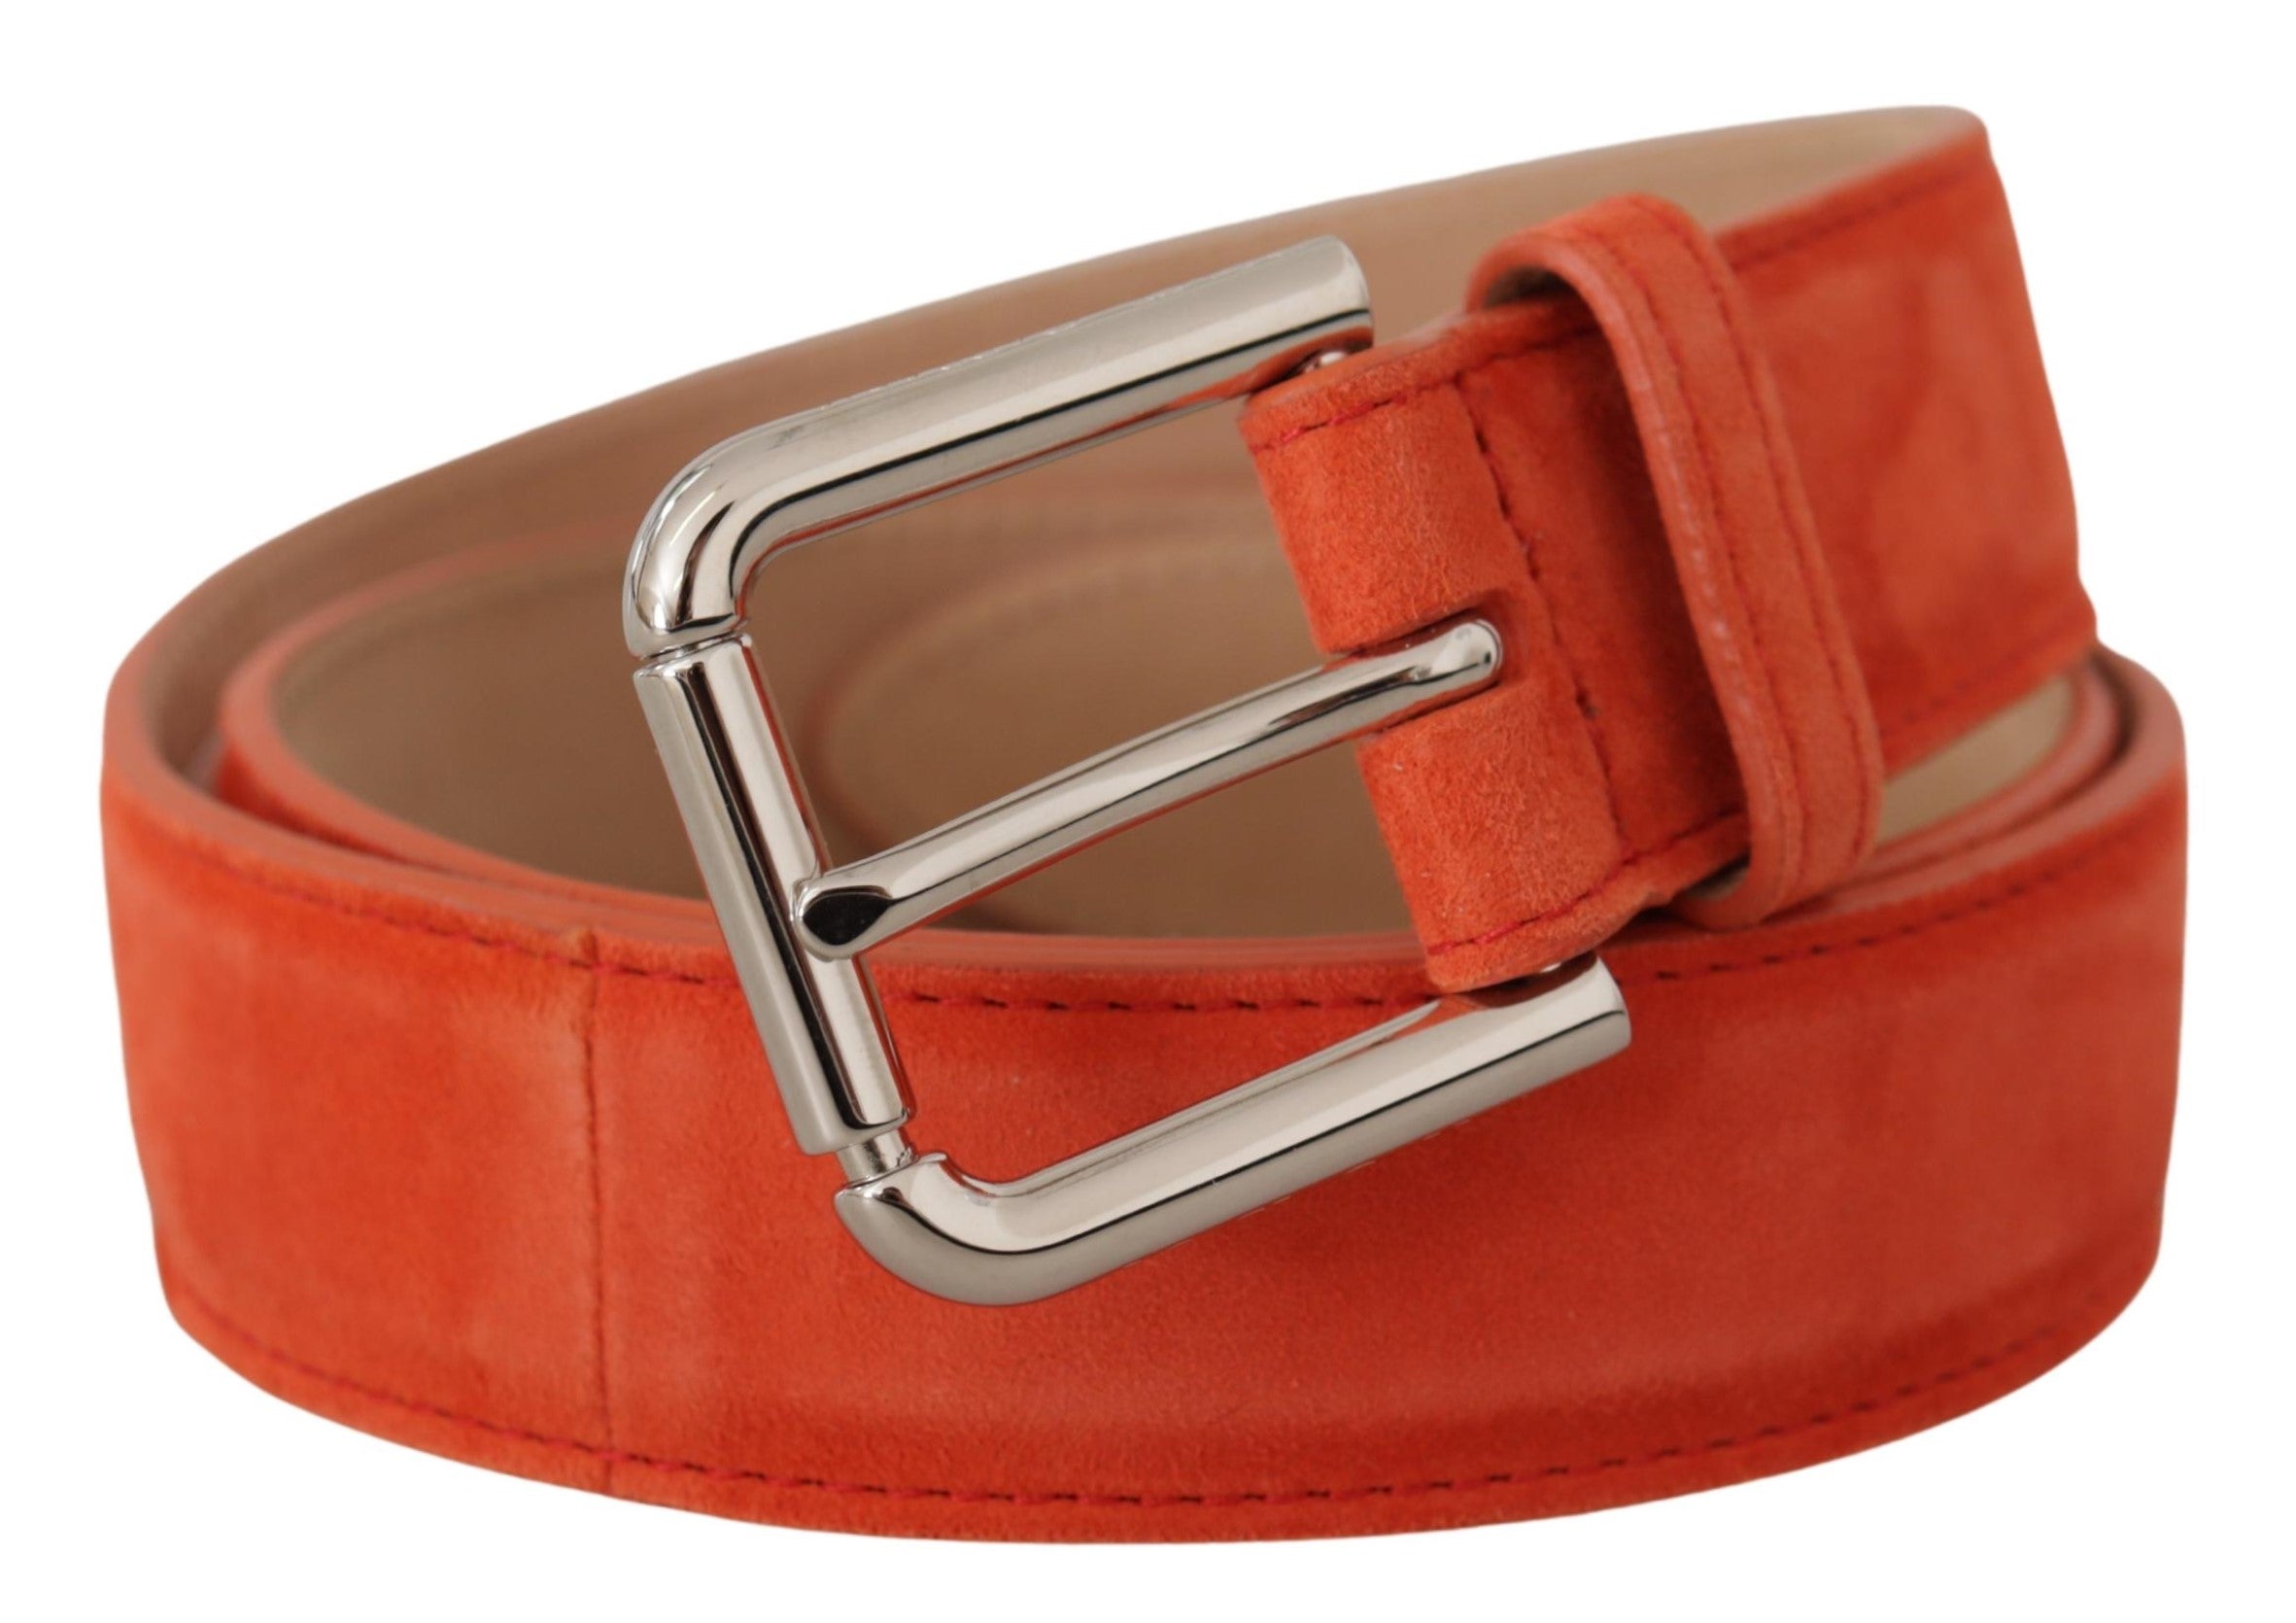 Dolce & Gabbana Elegant Suede Leather Belt in Vibrant Orange